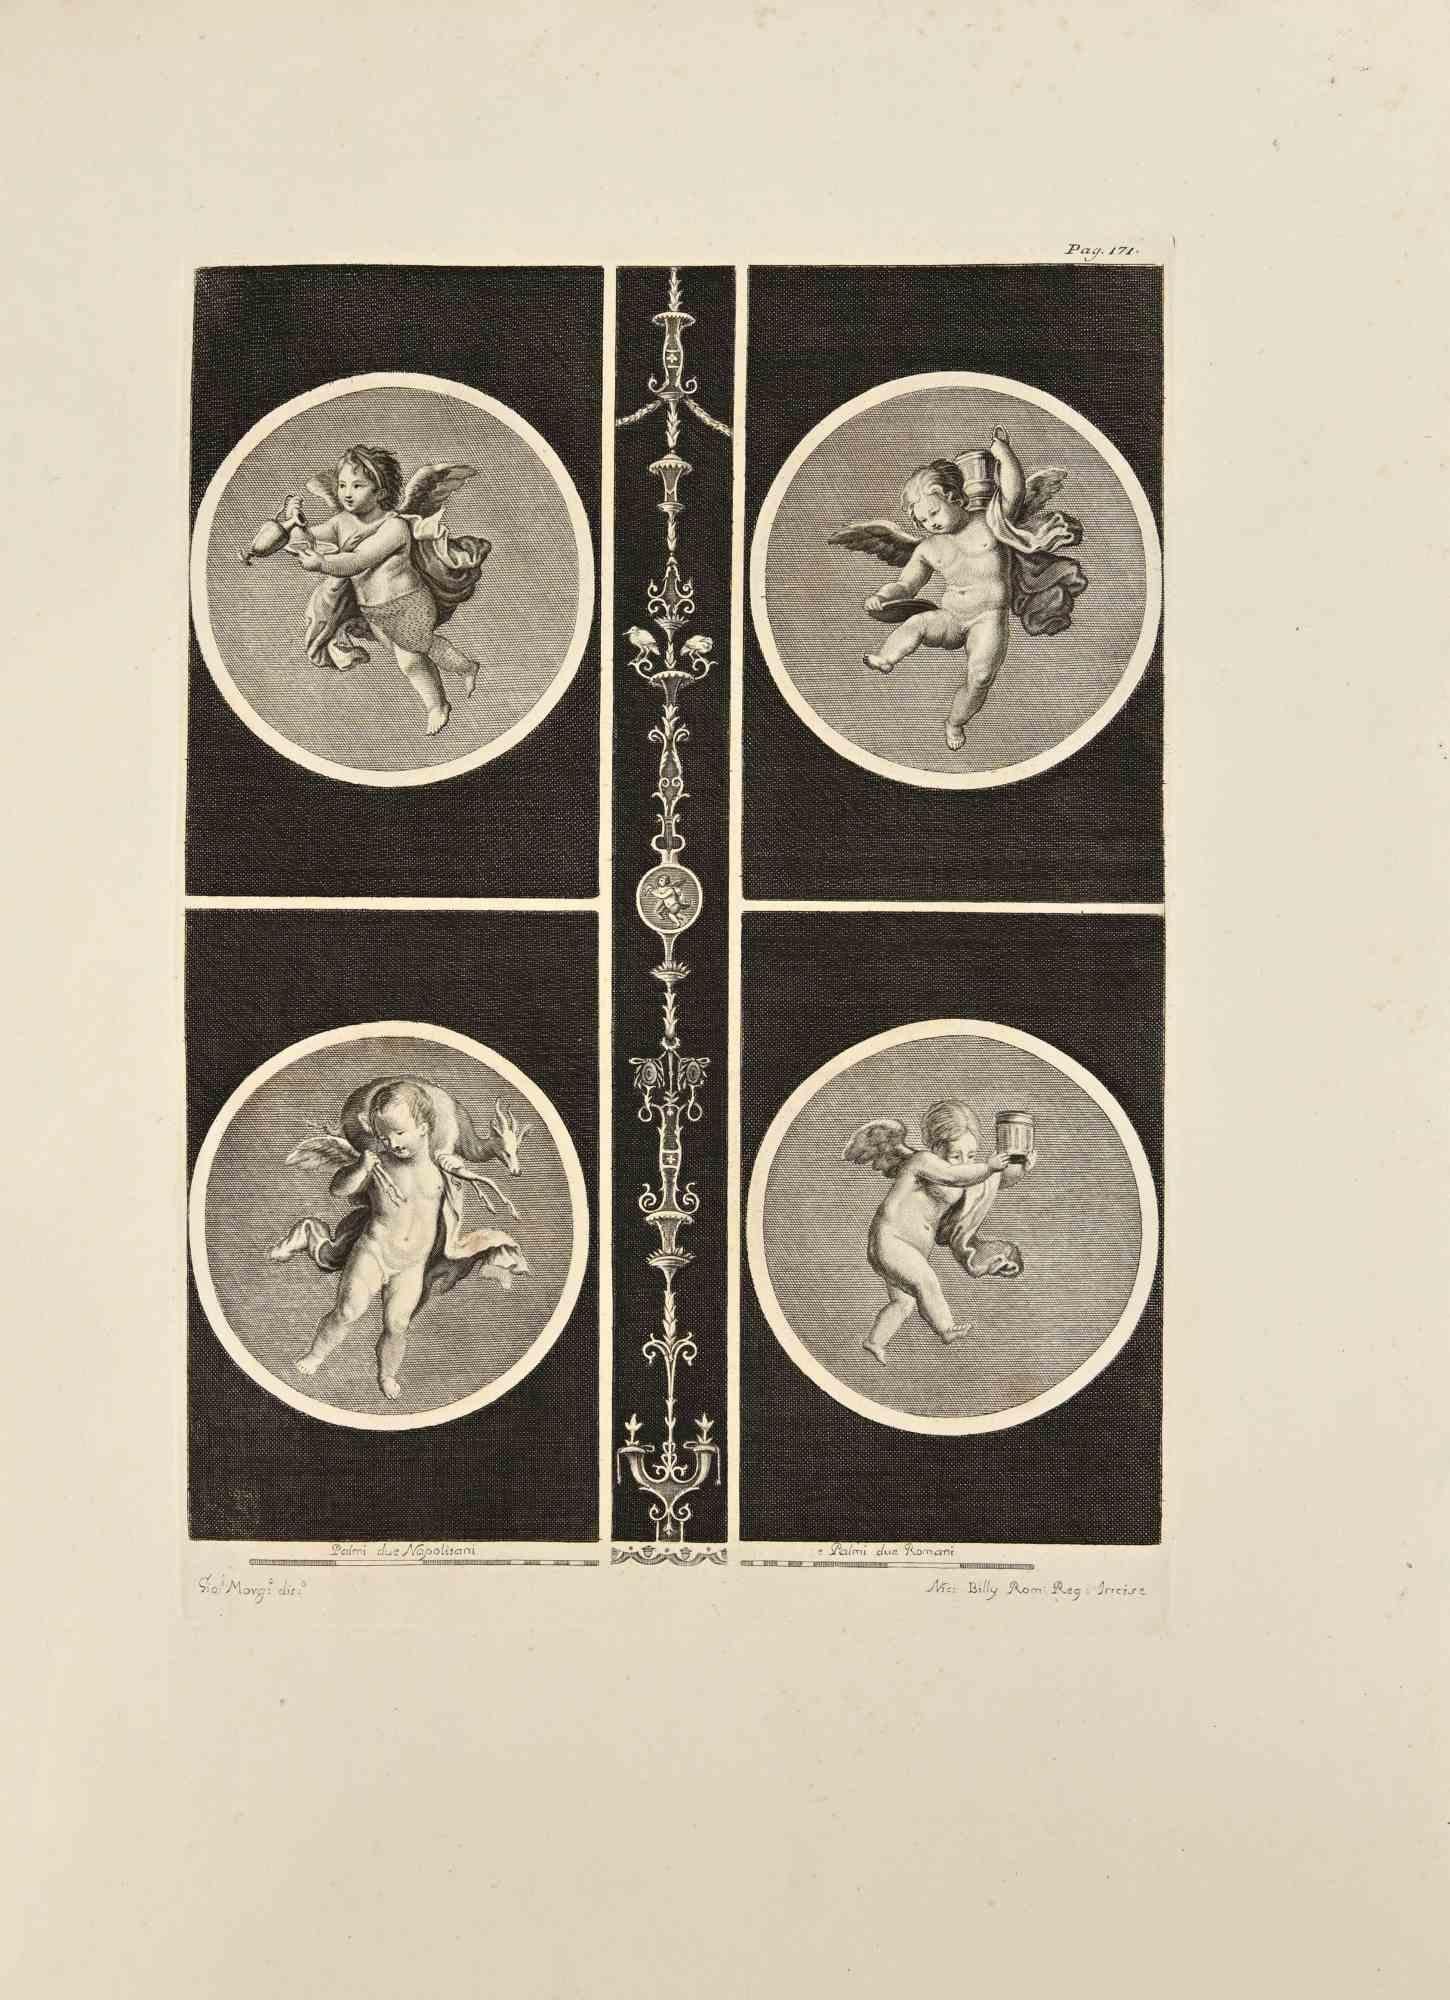 Cupido in Four Seasons aus "Antiquities of Herculaneum" ist eine Radierung auf Papier von Nicola Billy aus dem 18. Jahrhundert.

Signiert auf der Platte.

Guter Zustand mit einigen Faltungen.

Die Radierung gehört zu der Druckserie "Antiquities of